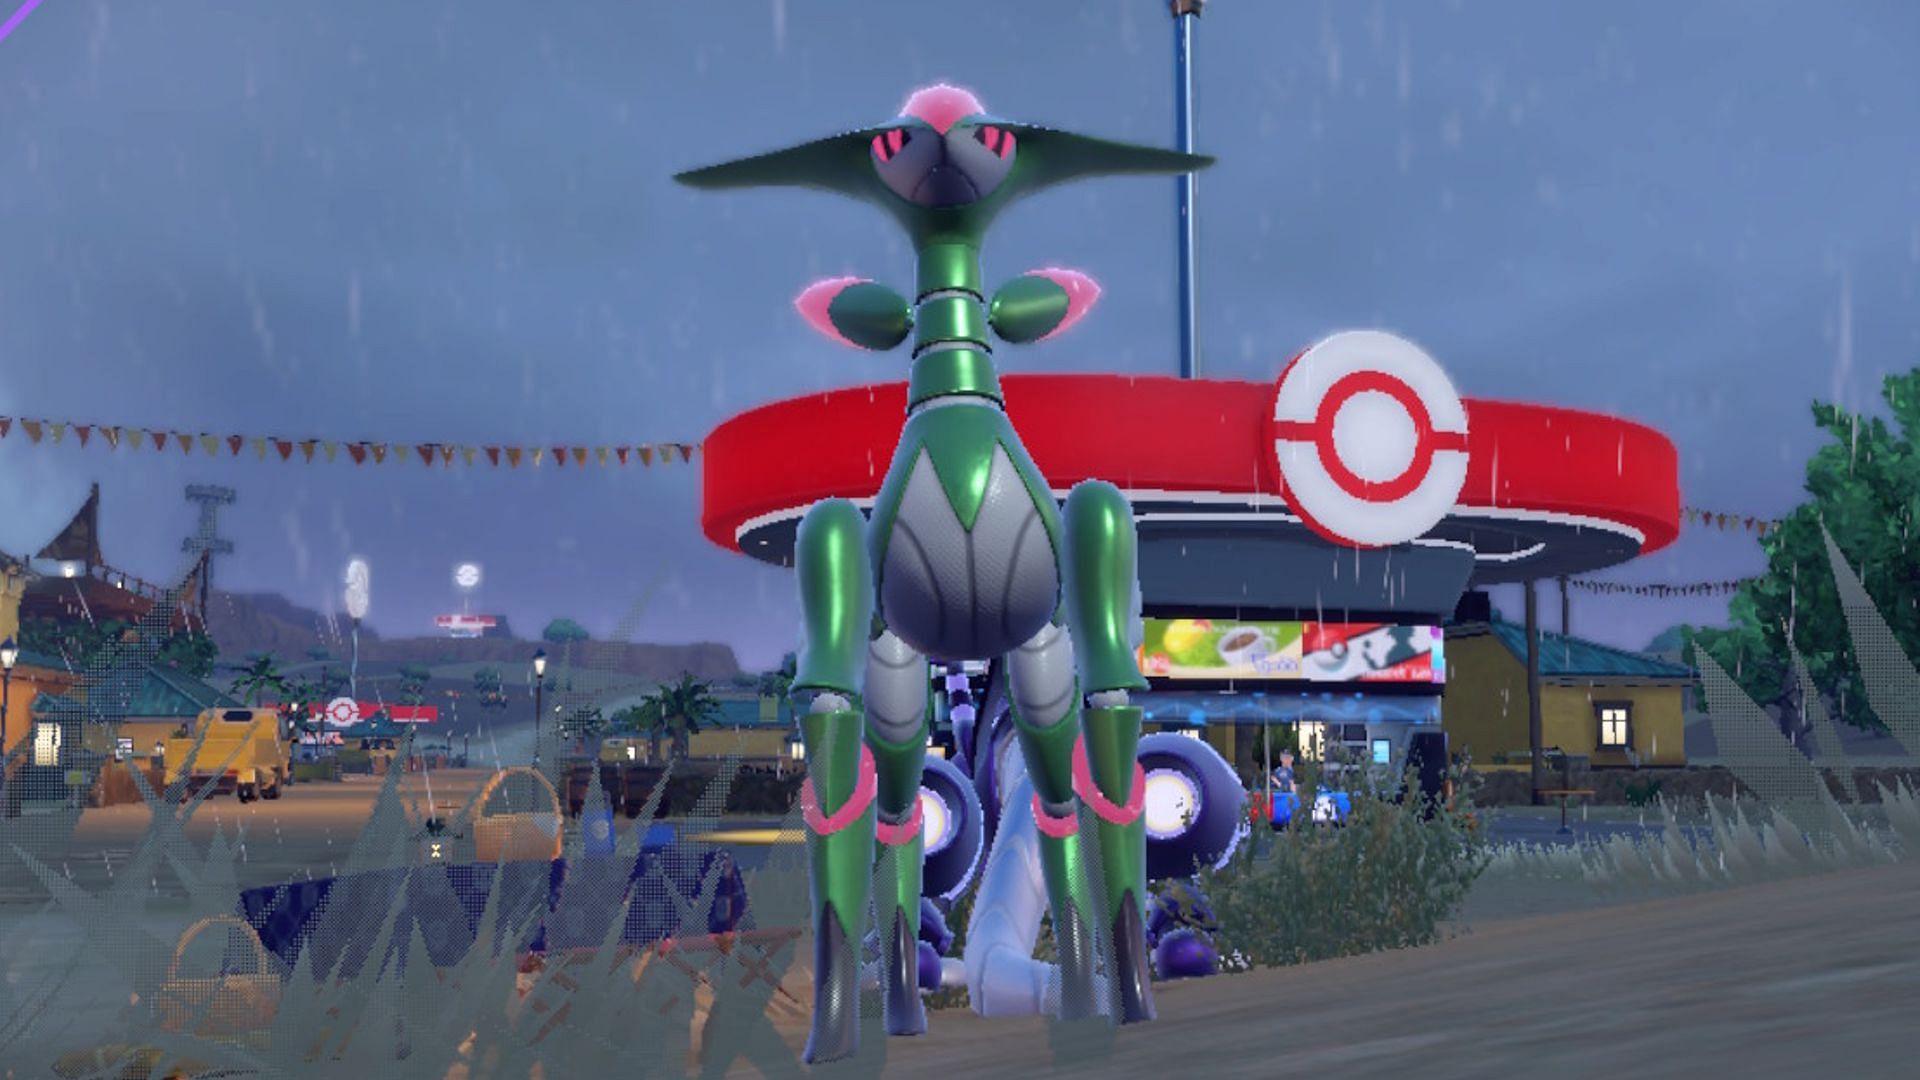 Iron Moth (Pokémon) - Bulbapedia, the community-driven Pokémon